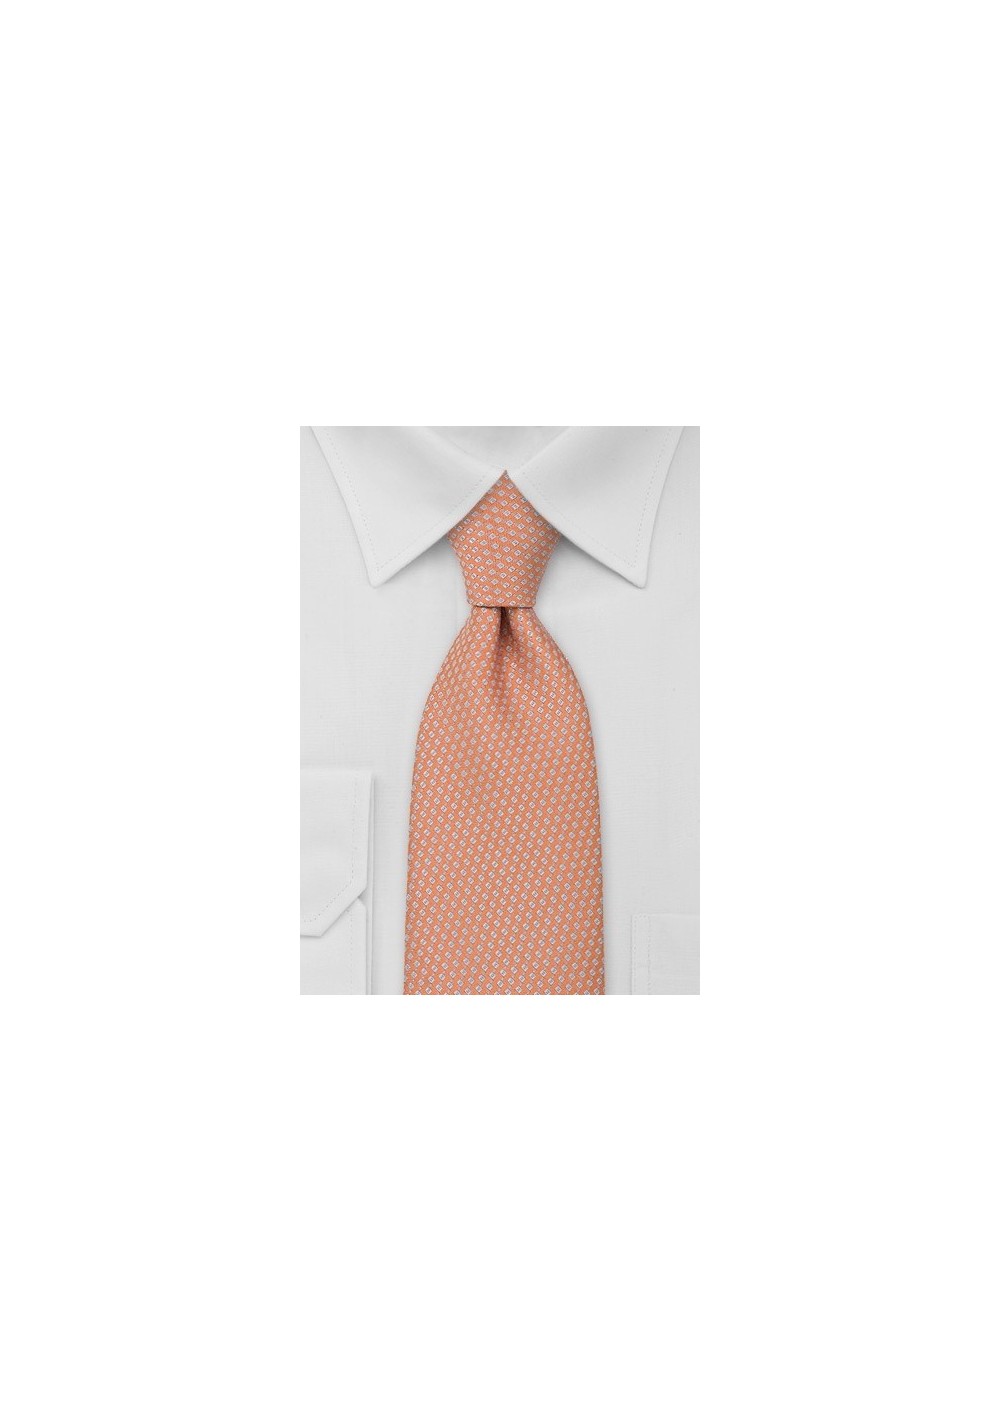 Light Orange Foulard Necktie